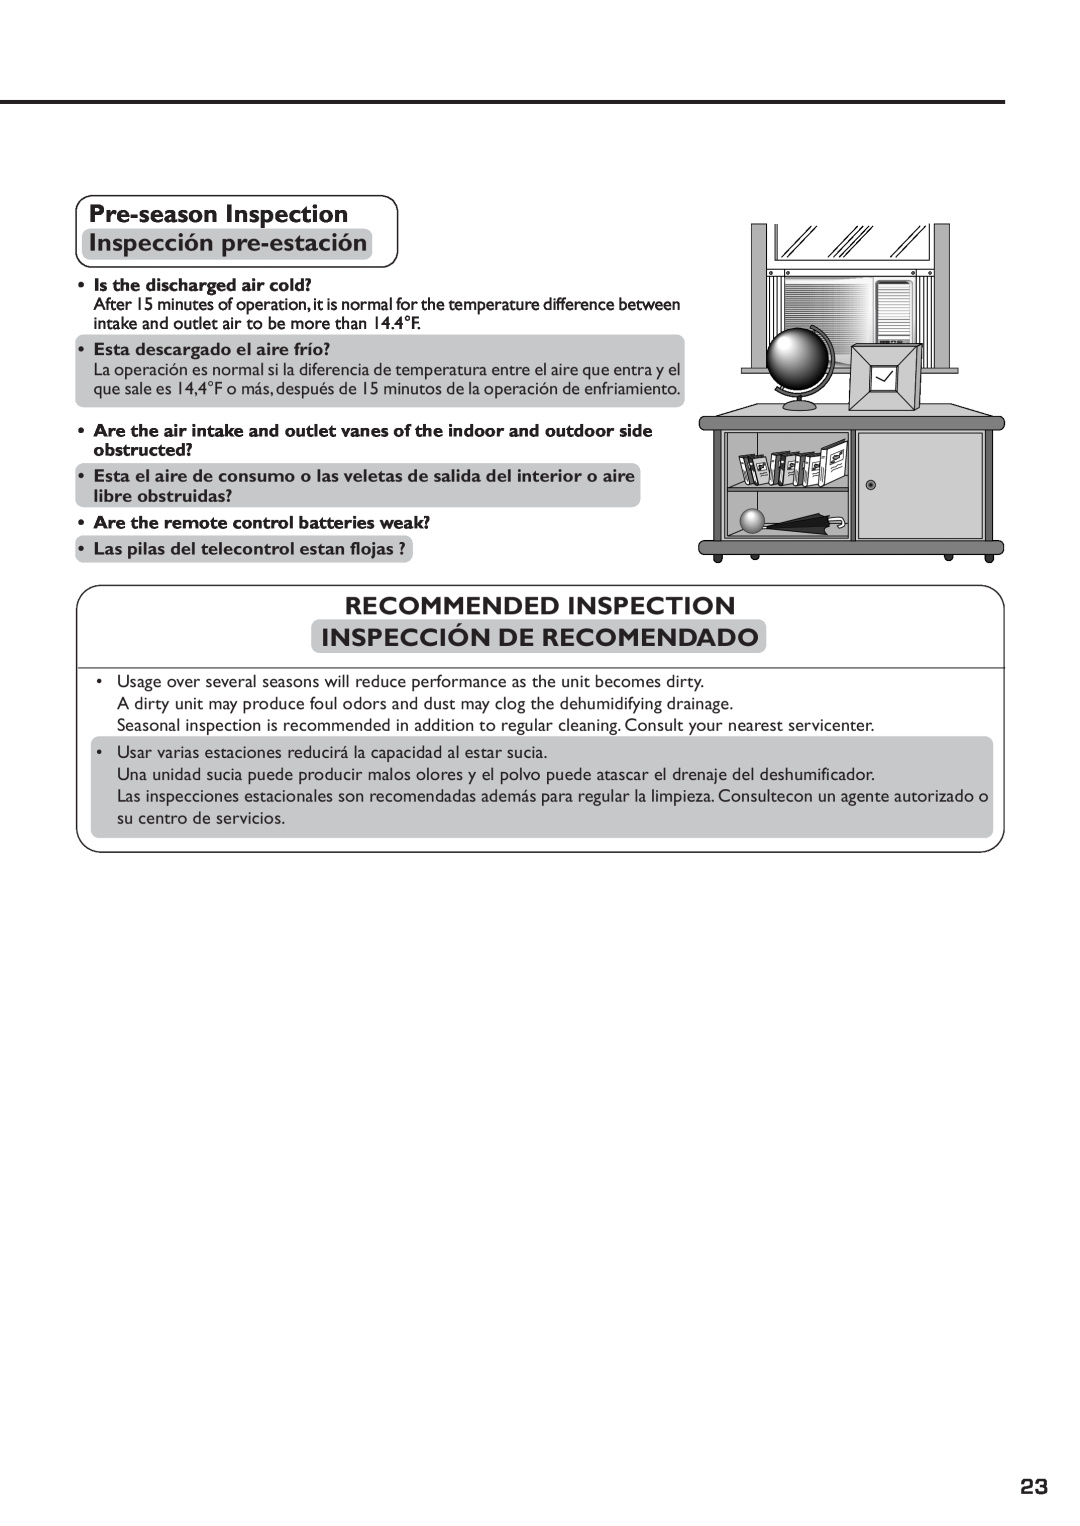 Panasonic CW-XC83YU Pre-seasonInspection Inspección pre-estación, Recommended Inspection Inspección De Recomendado 